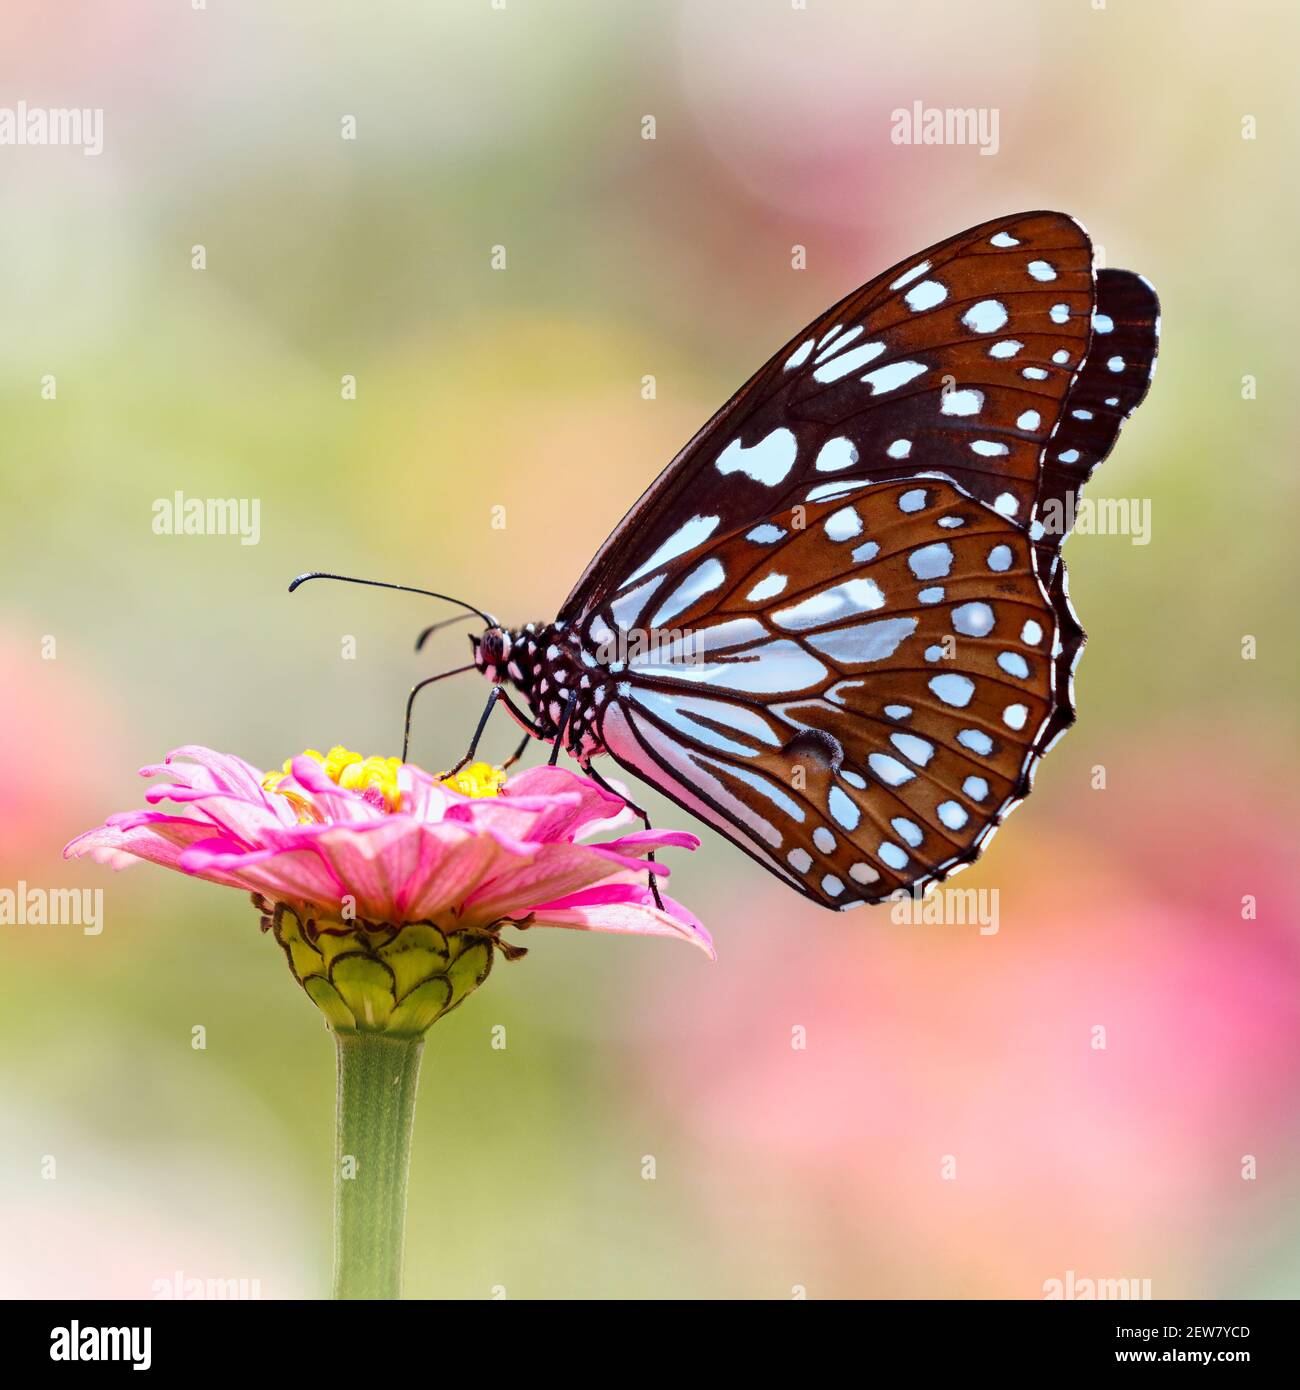 Mariposa Tigre azul o Tirumala limniace en flor de Zinnia rosa con fondo bokeh claro y colorido Foto de stock